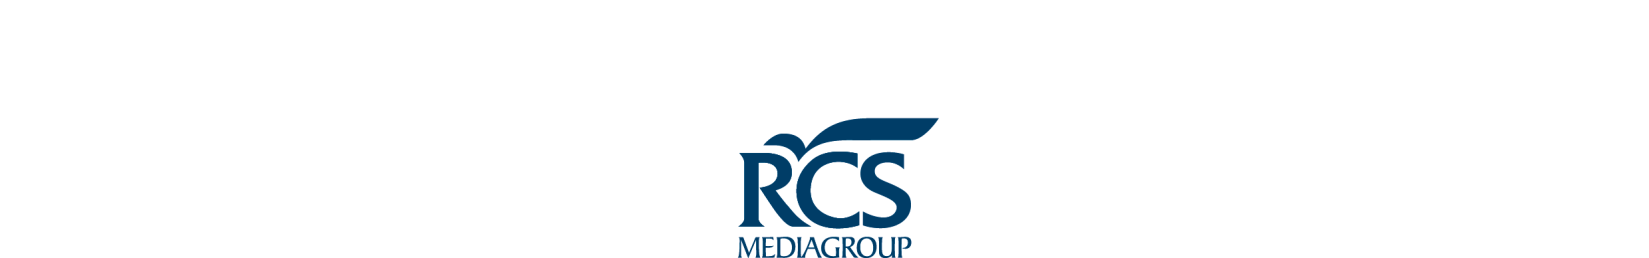 Comunicato Stampa Consiglio di Amministrazione RCS MediaGroup Approvati i risultati al 31 dicembre 2013(*) Raggiunti i target di profittabilità e generazione di cassa previsti per il 2013 nell ambito